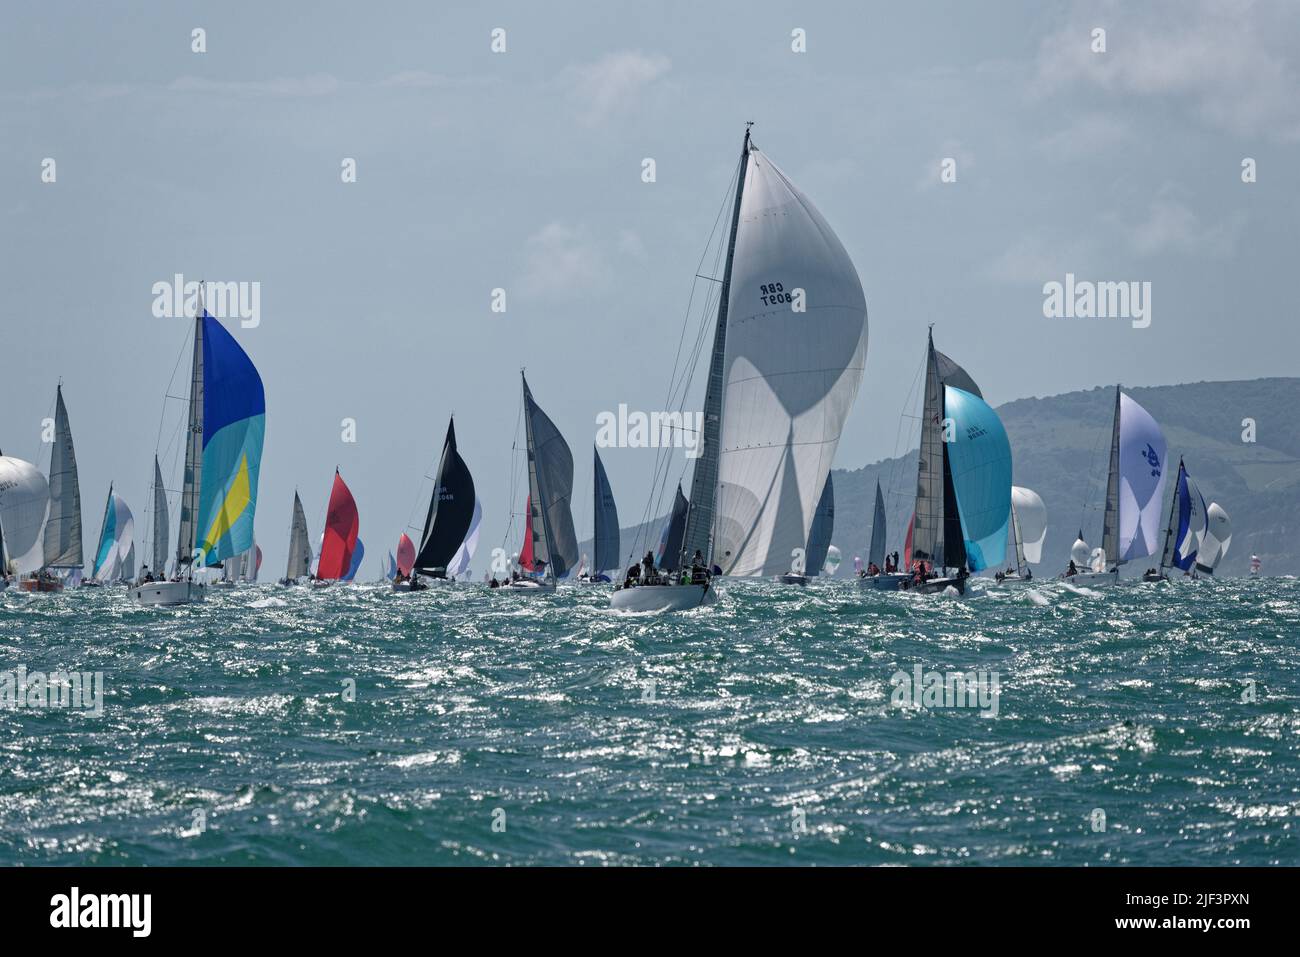 Une véritable armada de voiliers participant à la course annuelle Round the Island du Club de voile de l'île de Wight Banque D'Images